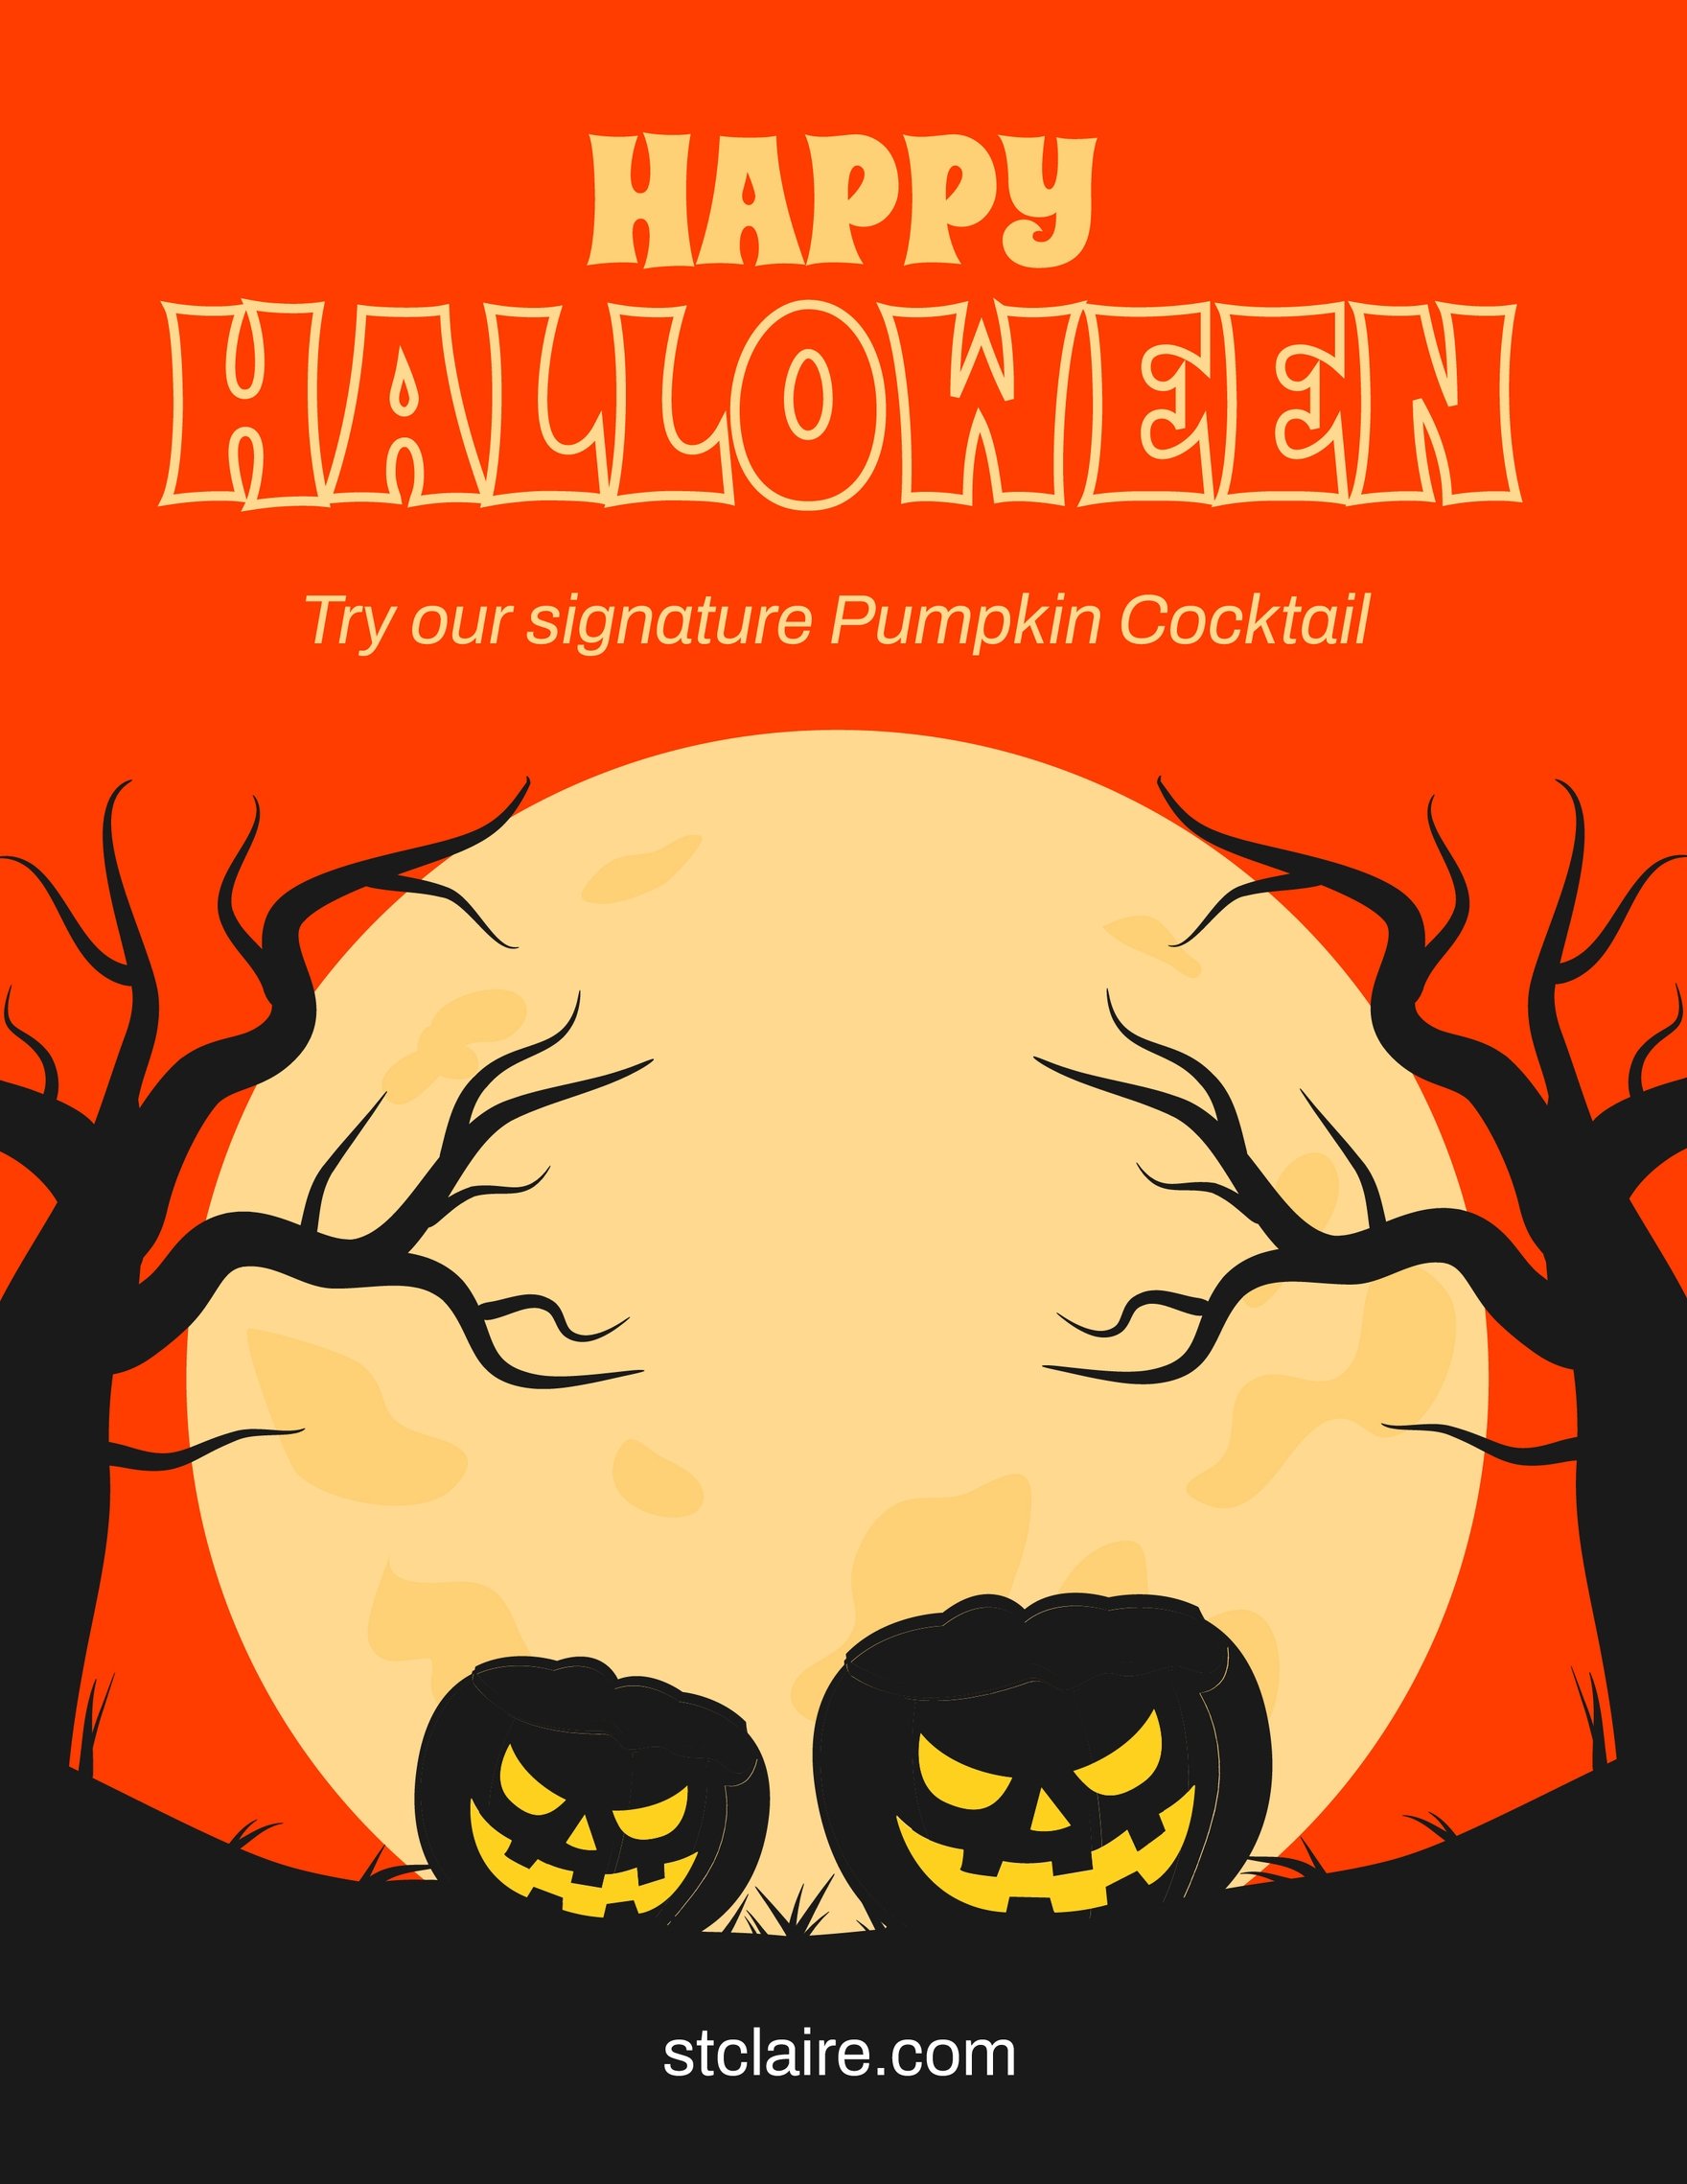 Halloween Mockup Flyer in Word, Google Docs, Illustrator, PSD, Apple Pages, Publisher, EPS, SVG, JPG, PNG